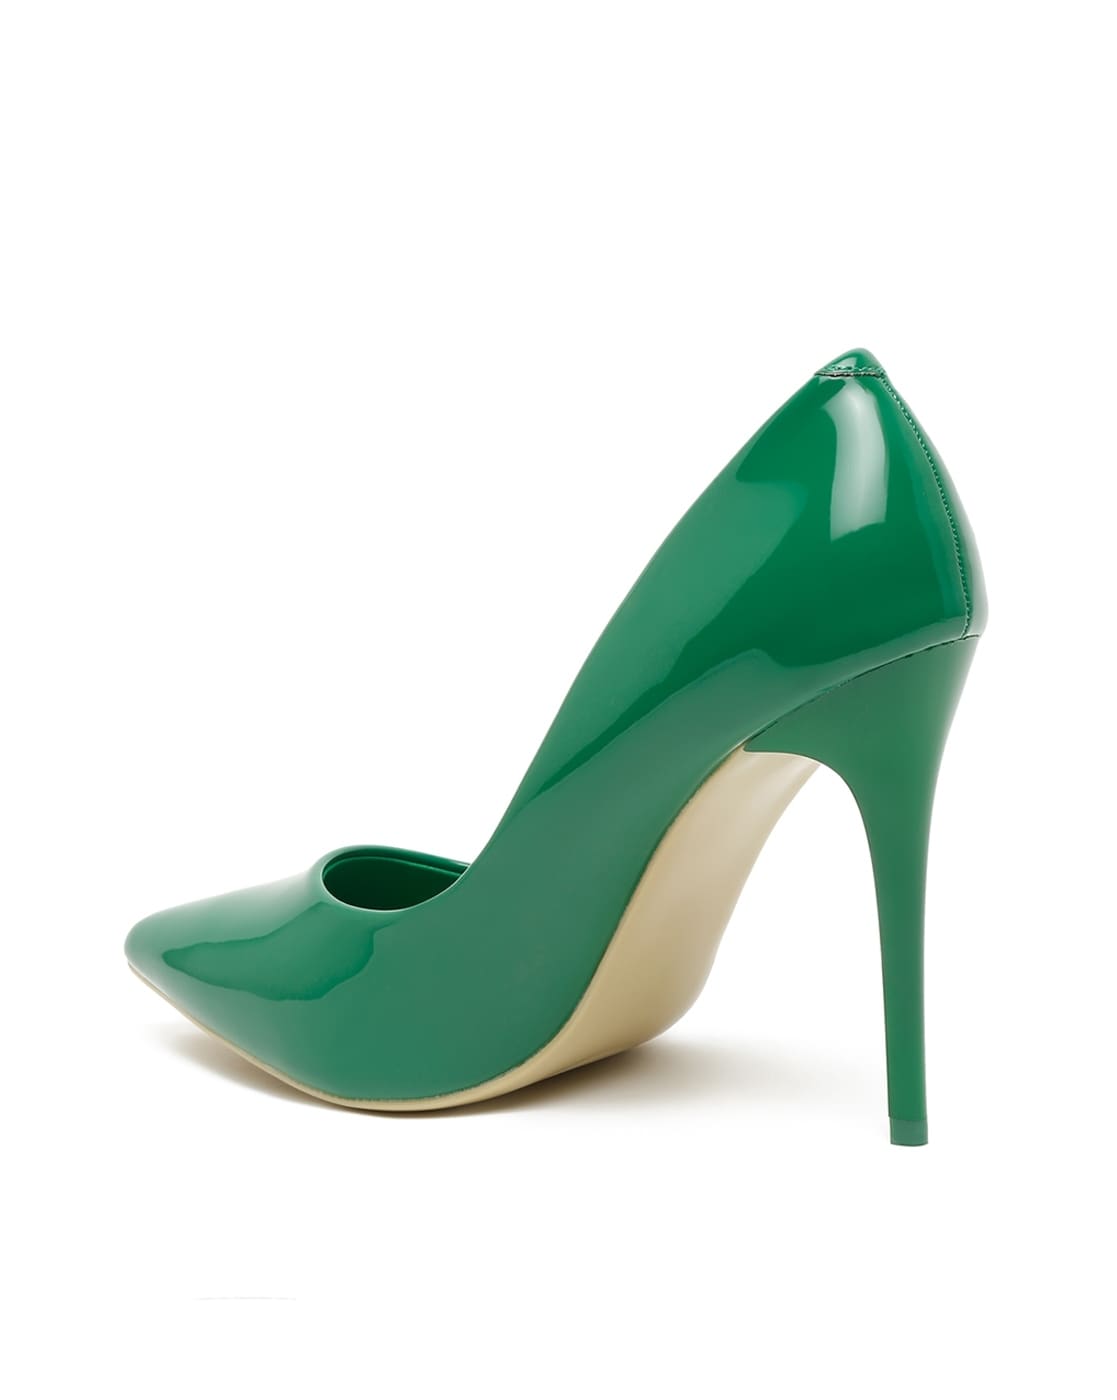 NAVI GREEN High Heels | Buy Women's HEELS Online | Novo Shoes NZ